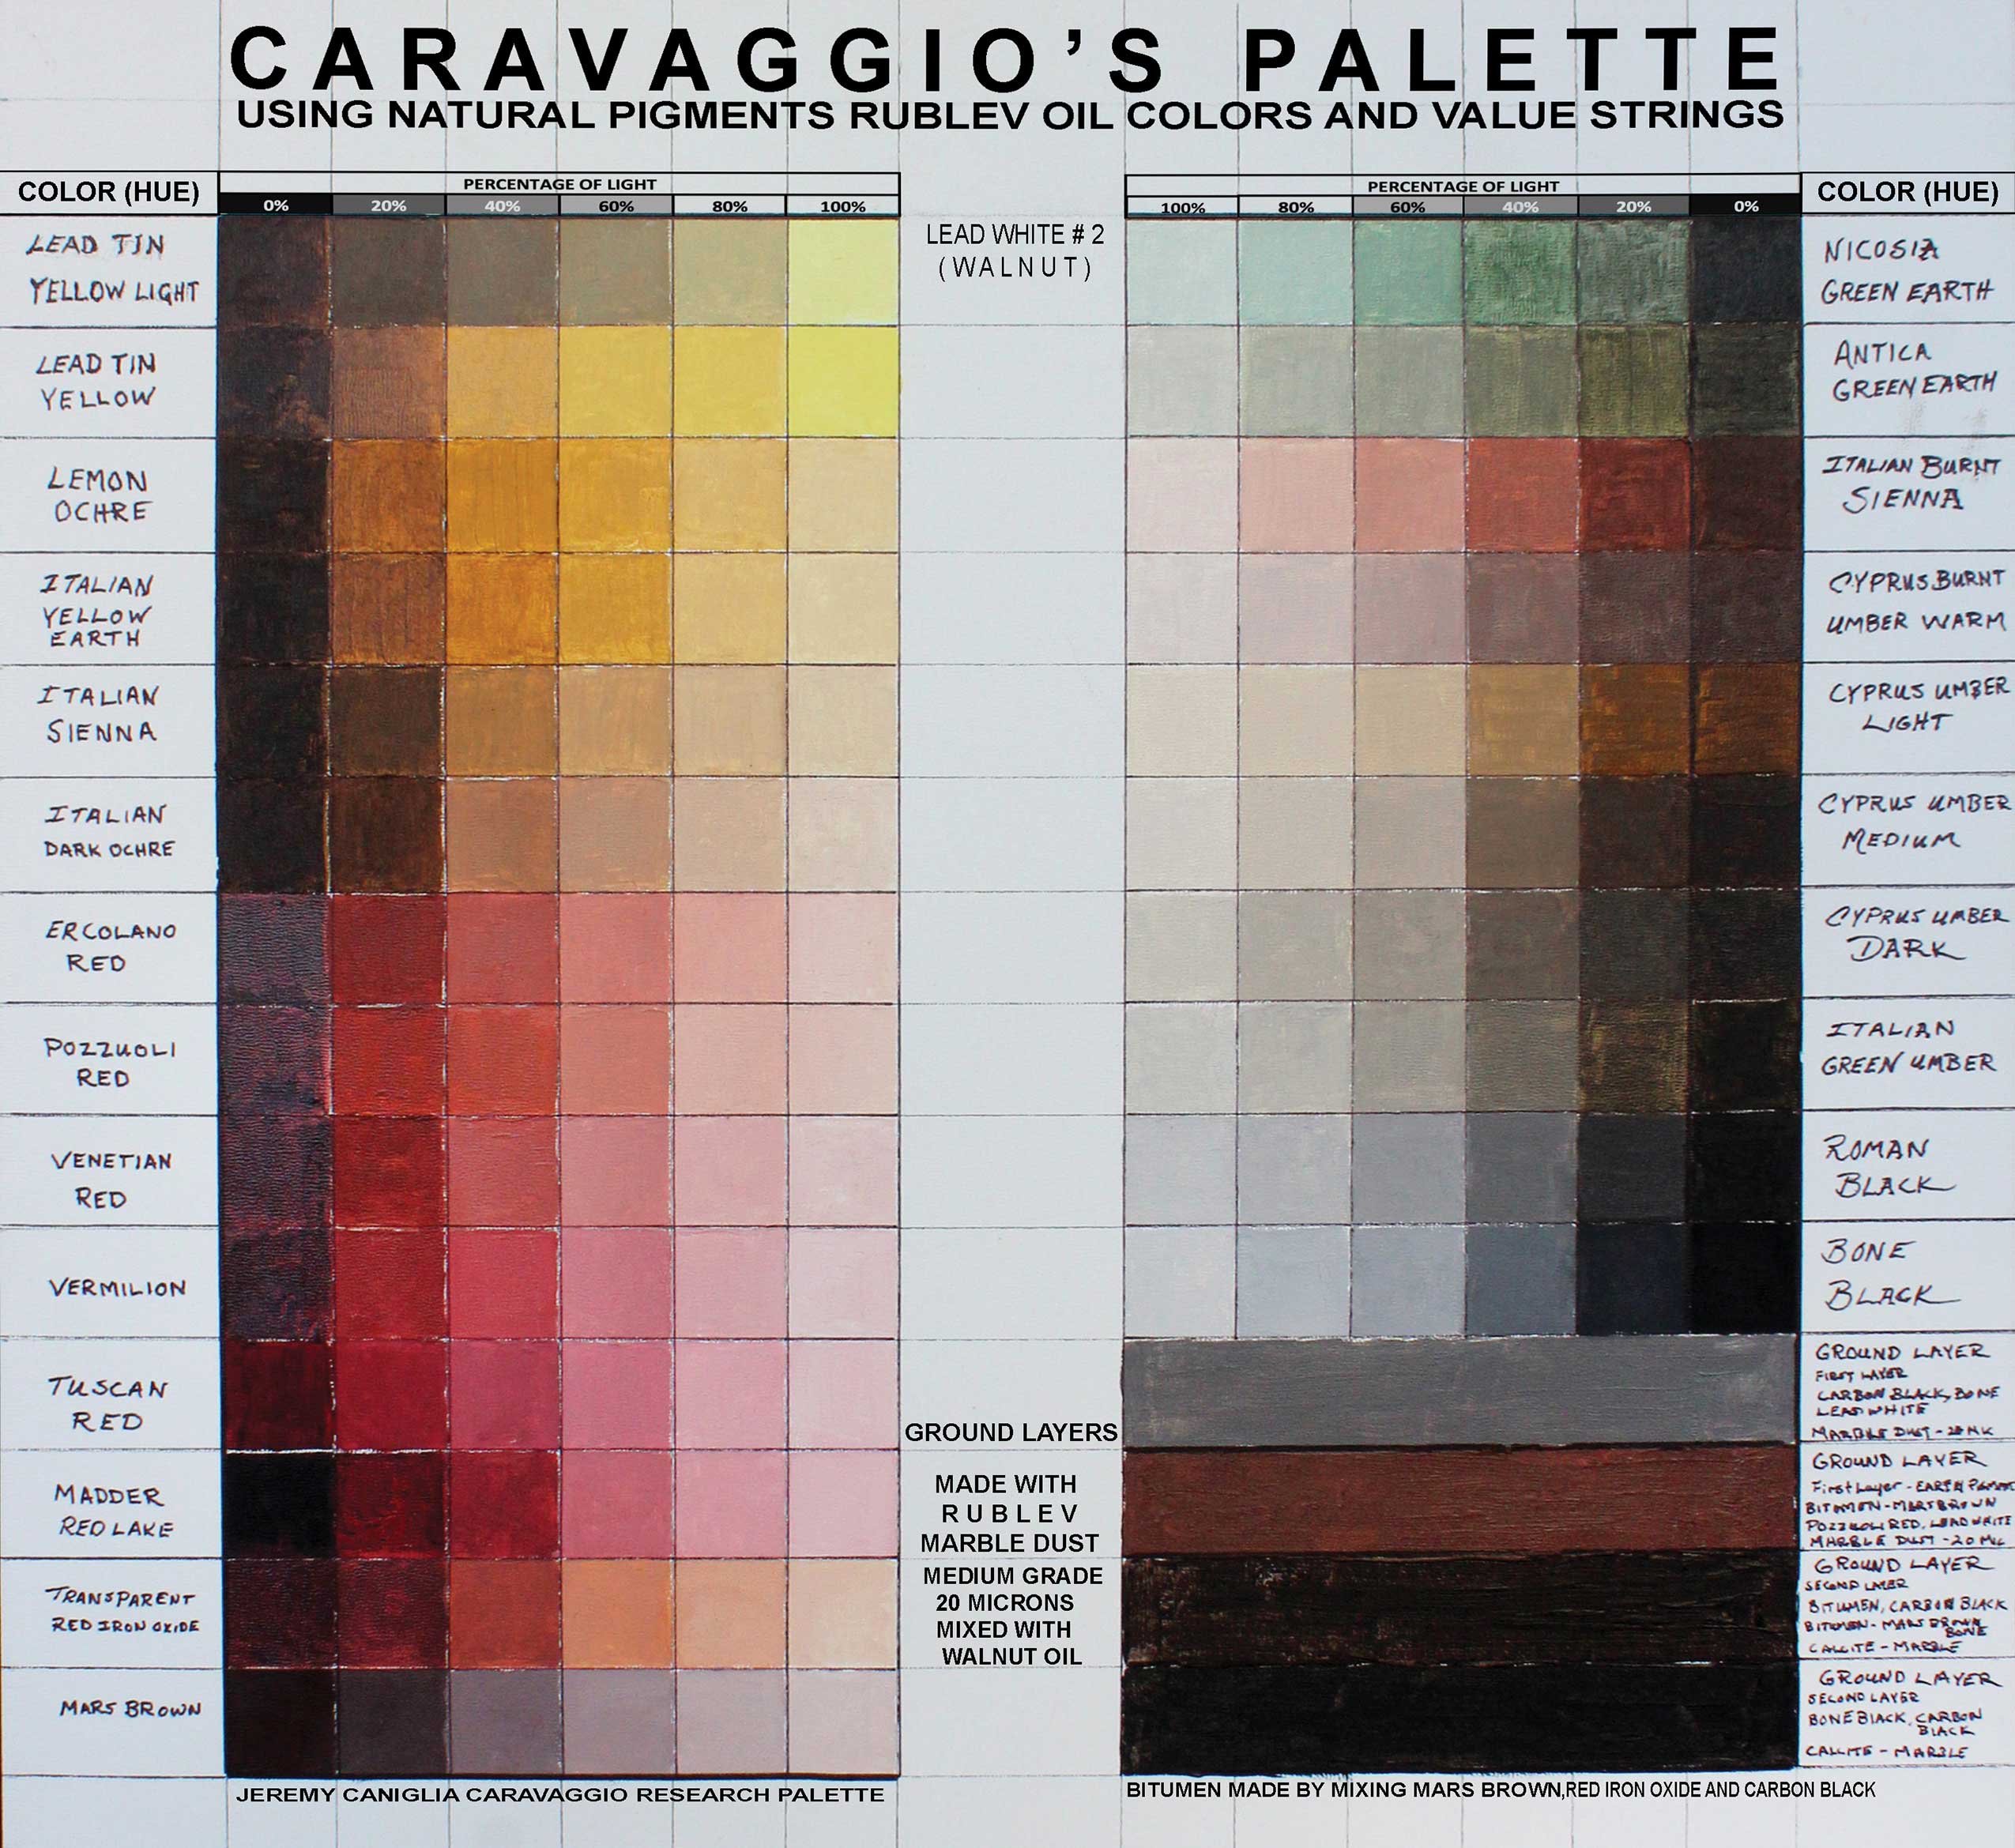 Caravaggio's palette